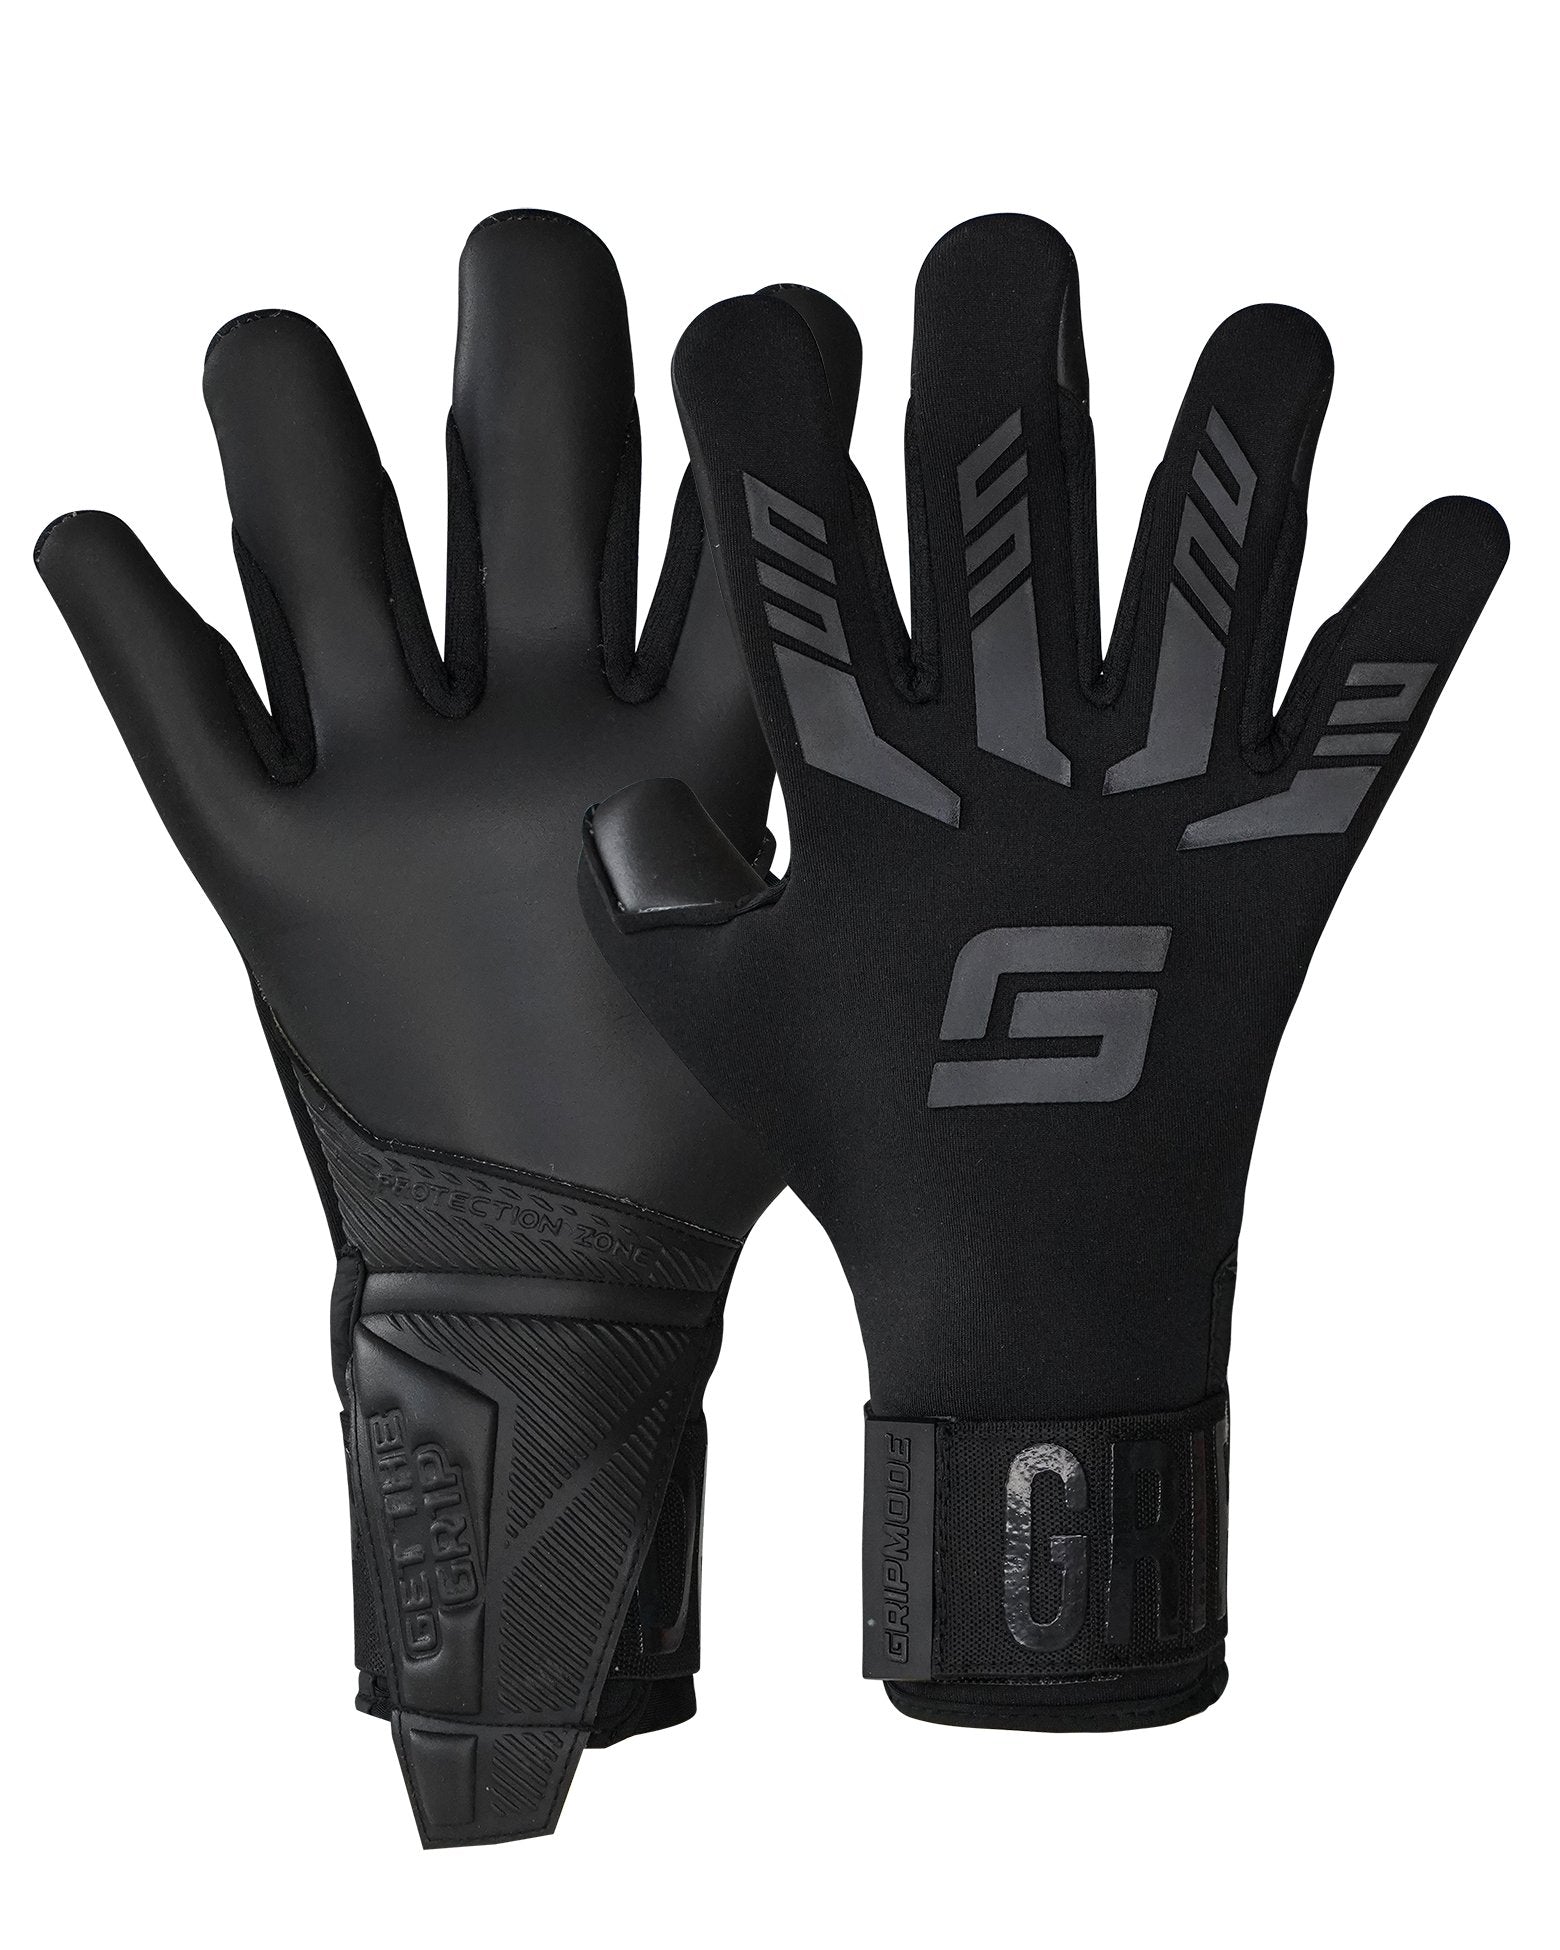 Gripmode Goalkeeper Gloves Blackout Hybrid 